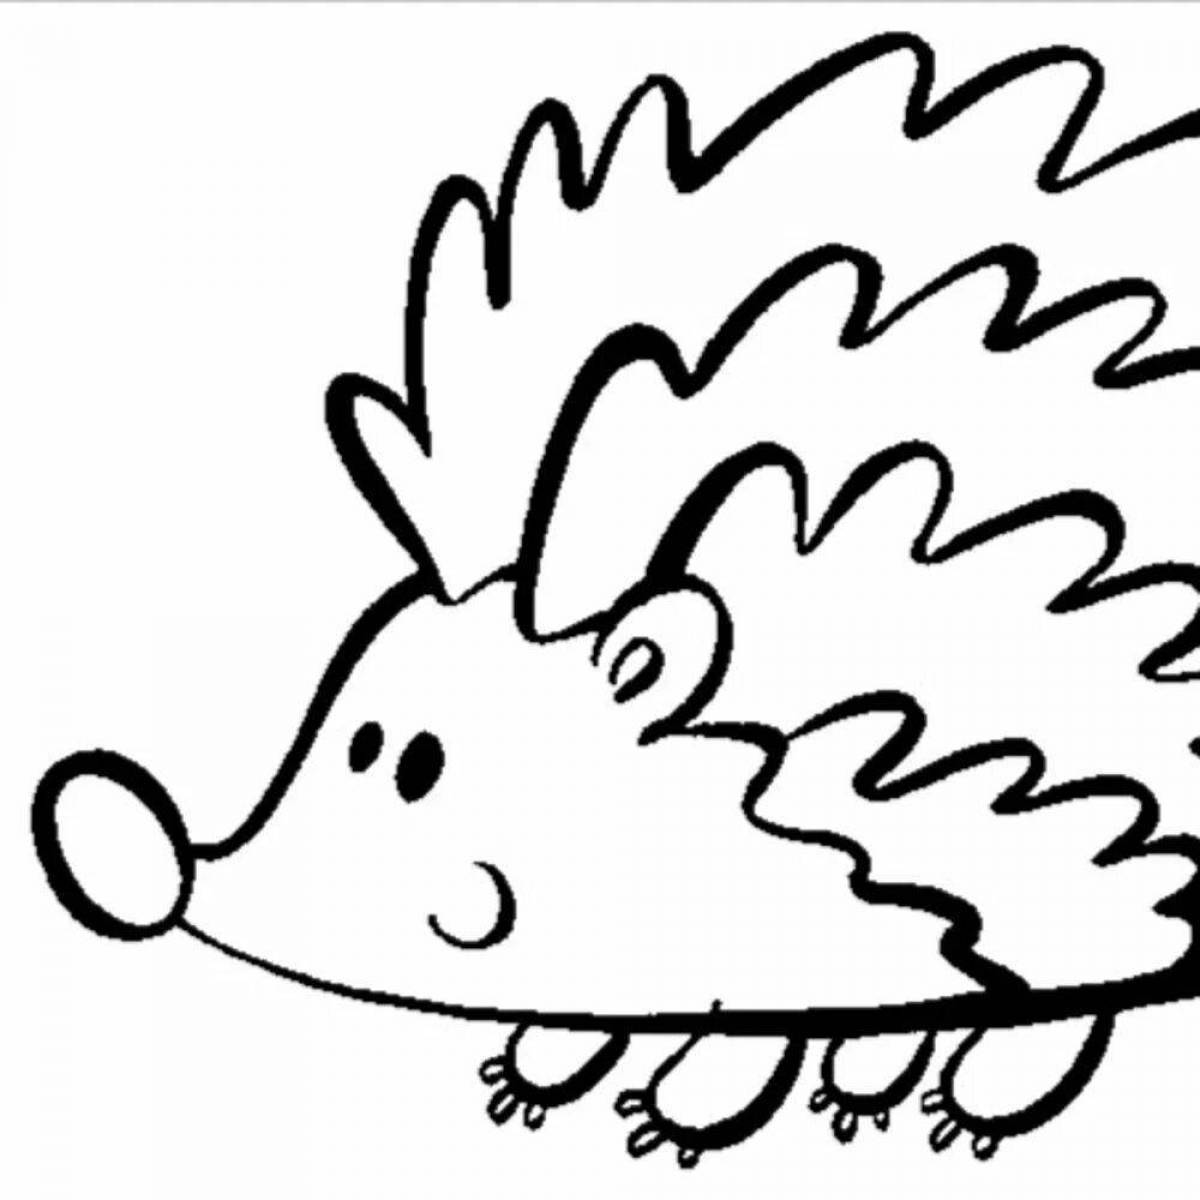 Coloring page happy hedgehog